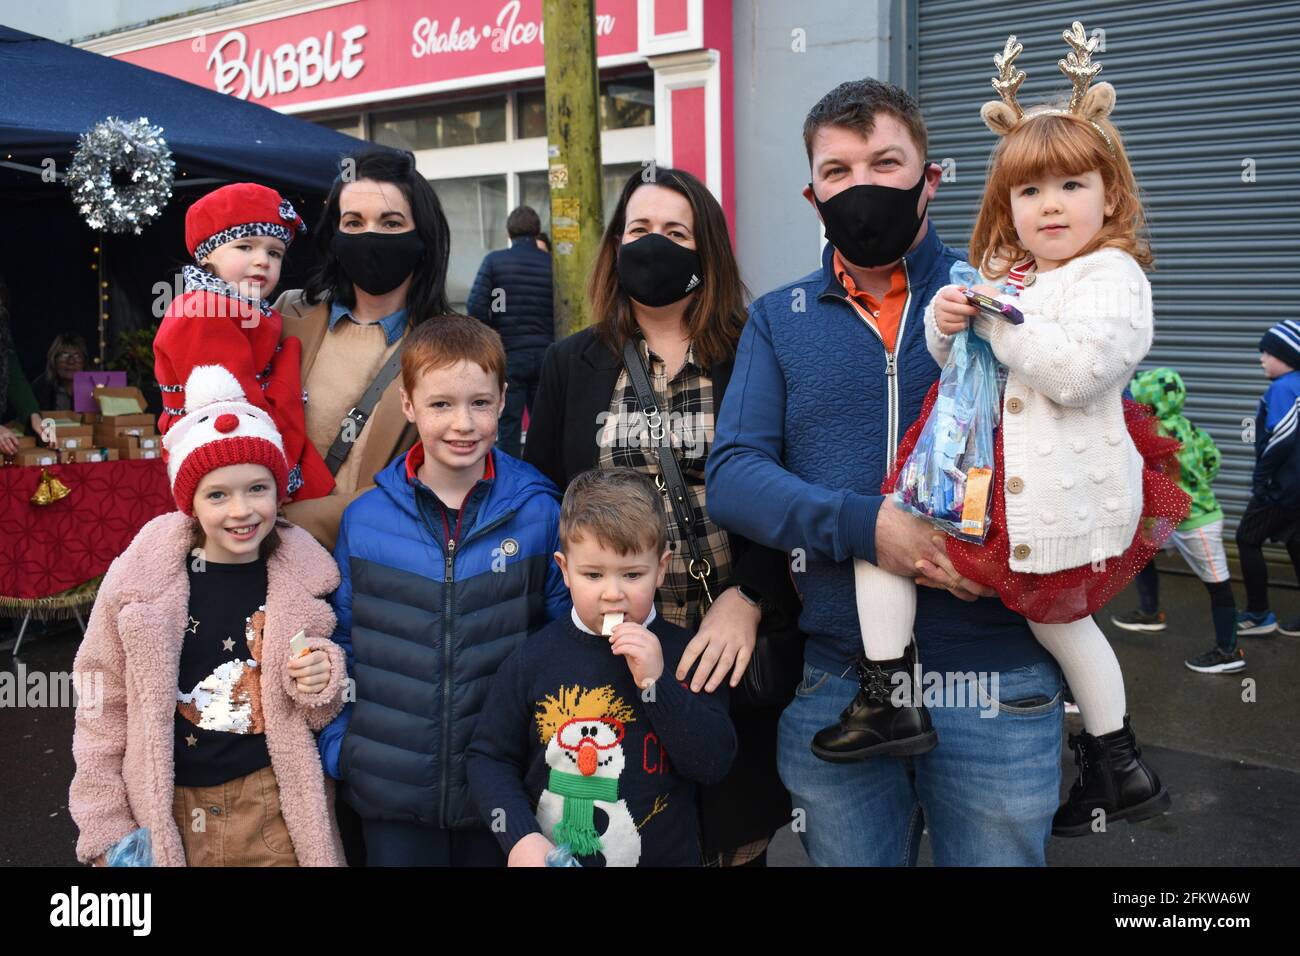 Viele Einheimische versammelten sich auf dem Weihnachtsmarkt in Bantry, um den Weihnachtsmann zu treffen. Bantry, Co Cork. Irland. Stockfoto